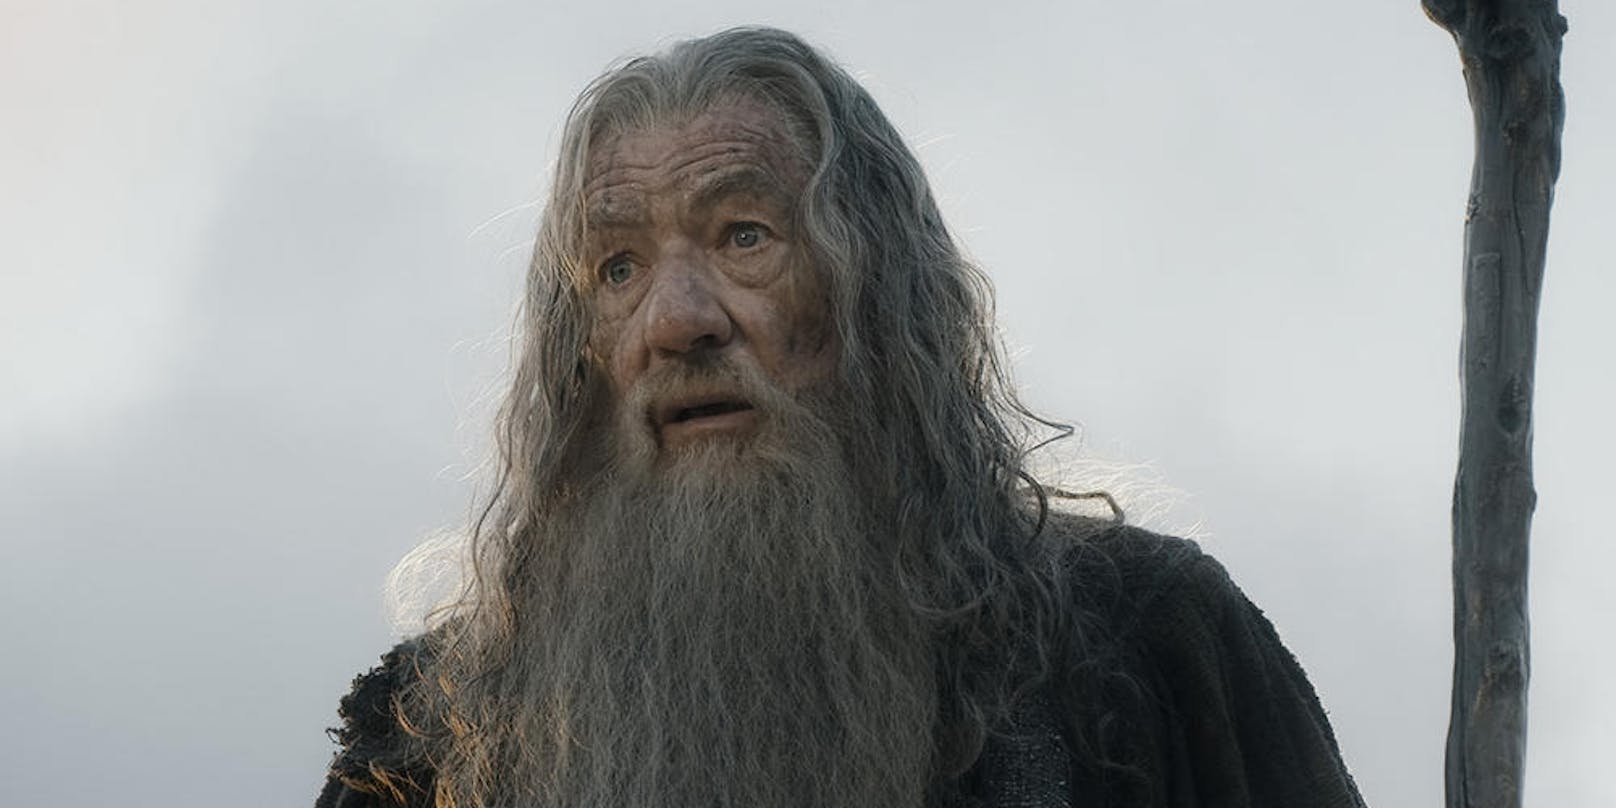 Ian McKellen als Gandalf in "Der Hobbit: Die Schlacht der fünf Heere"